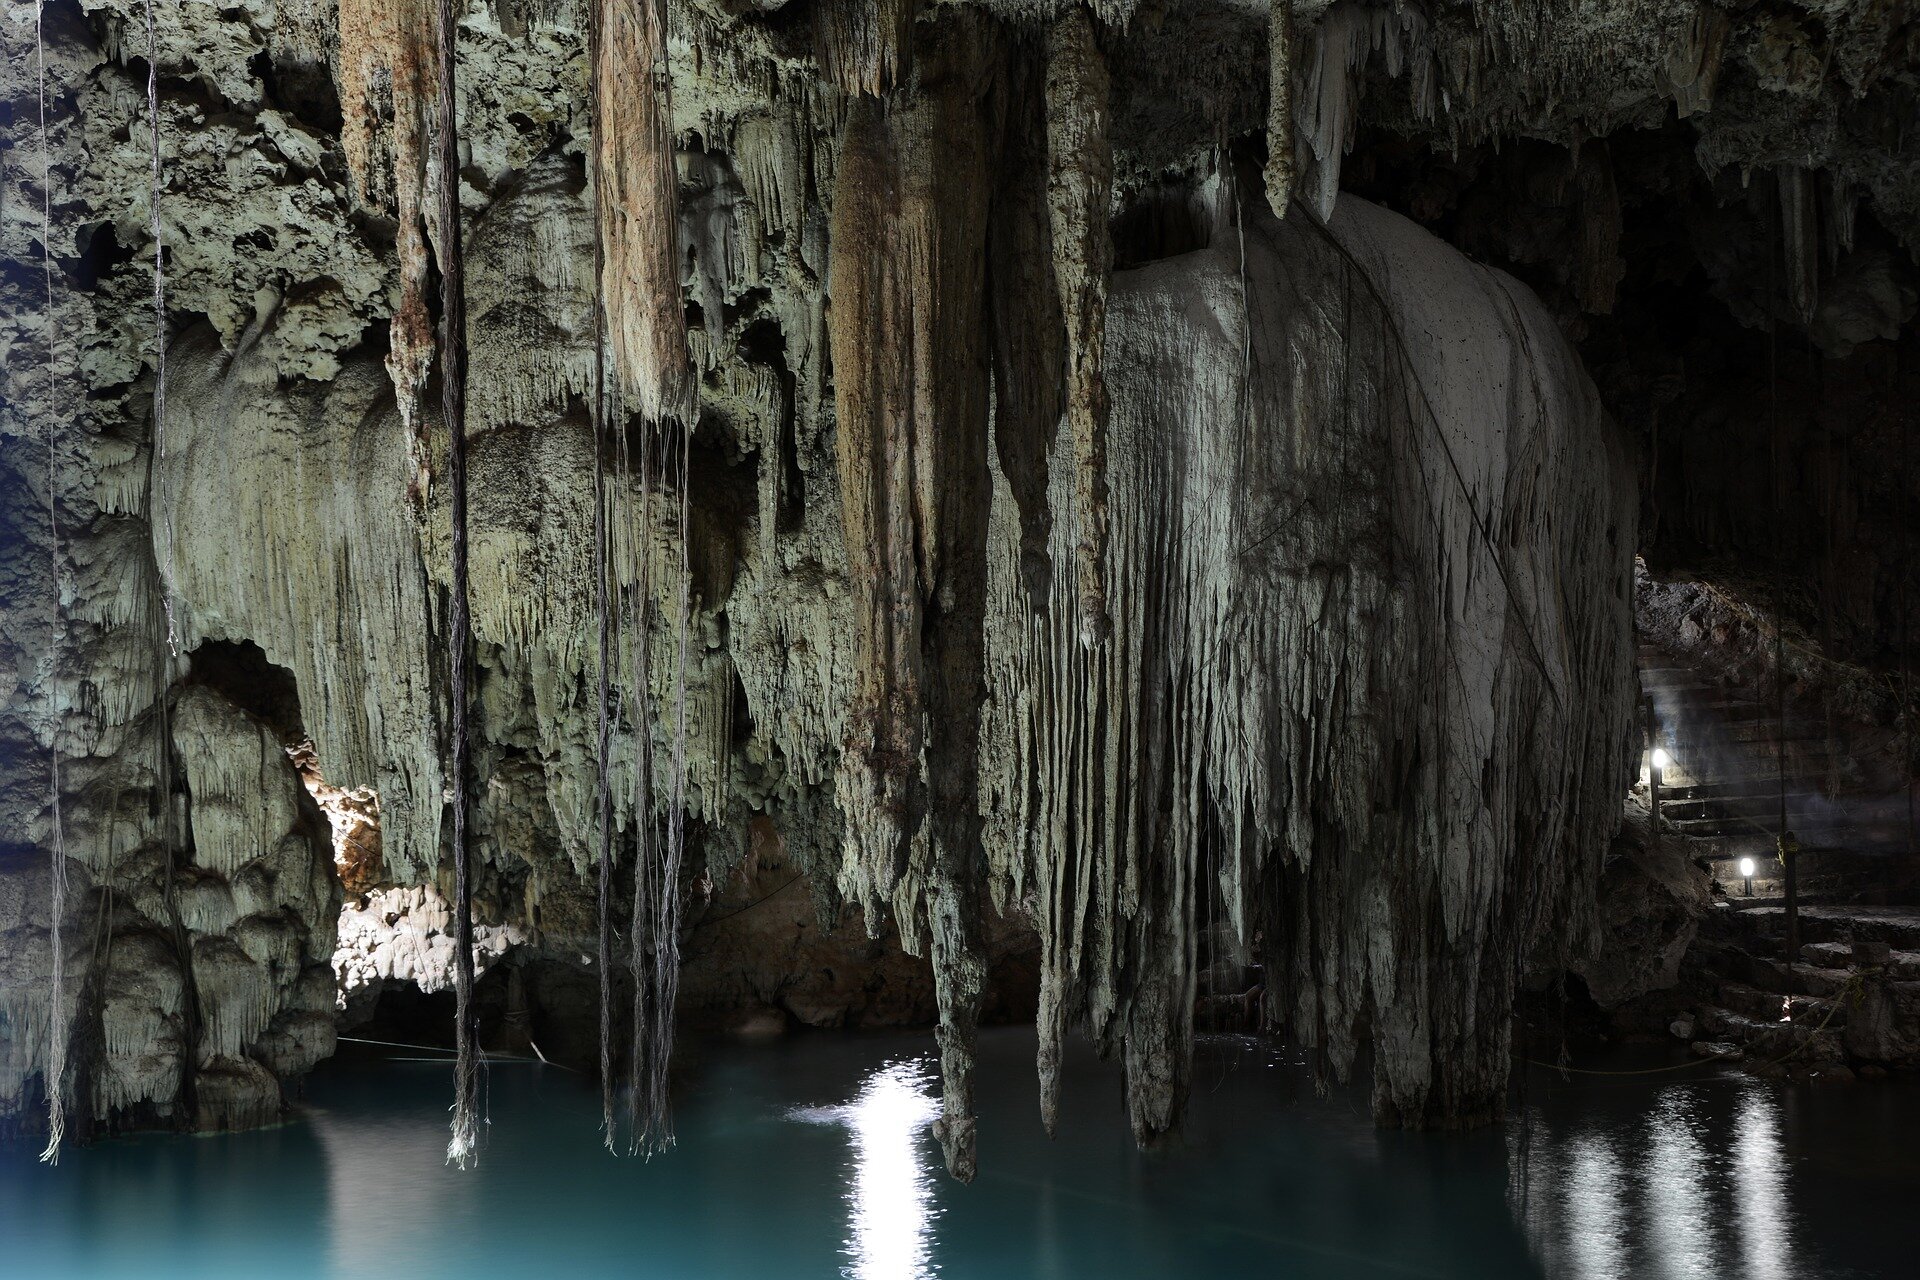 Zdjęcie przedstawiające stalaktyty które zwisają z sufitu jaskini. Stalaktyty wiszą nad wodą, a ich kształt przypomina cienkie rurki. Niektóre są połączone ze sobą i tworzą większe formy - stożki, przypominające sople lodu.